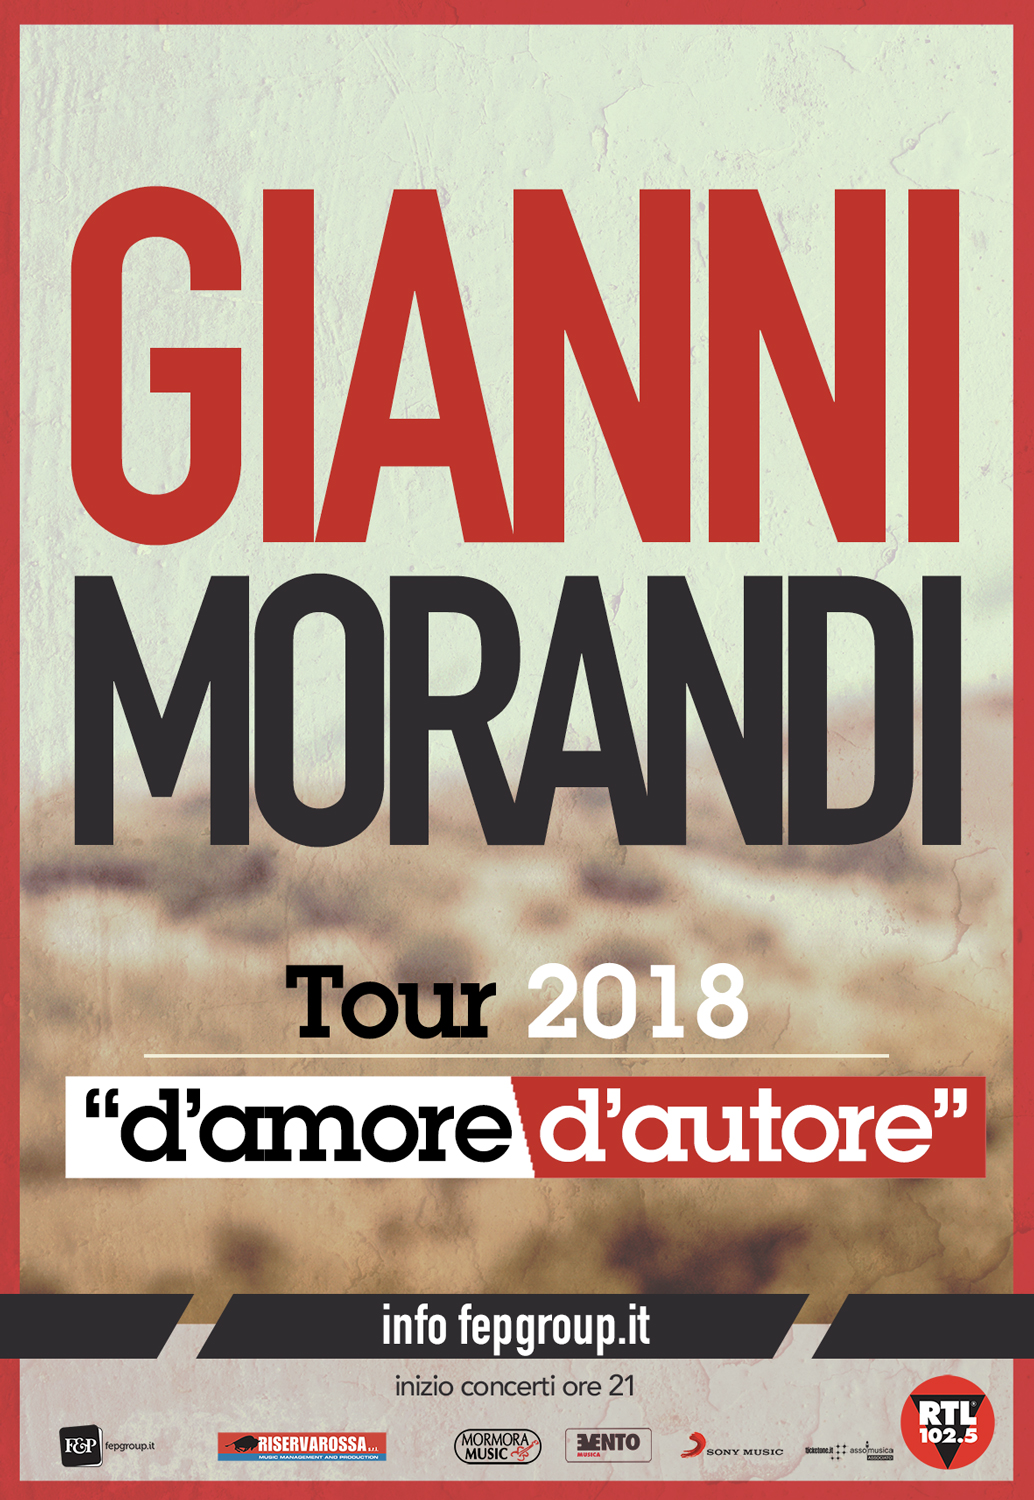  Gianni Morandi Tour 2018 “d’amore d’autore”, tre nuove date in programma